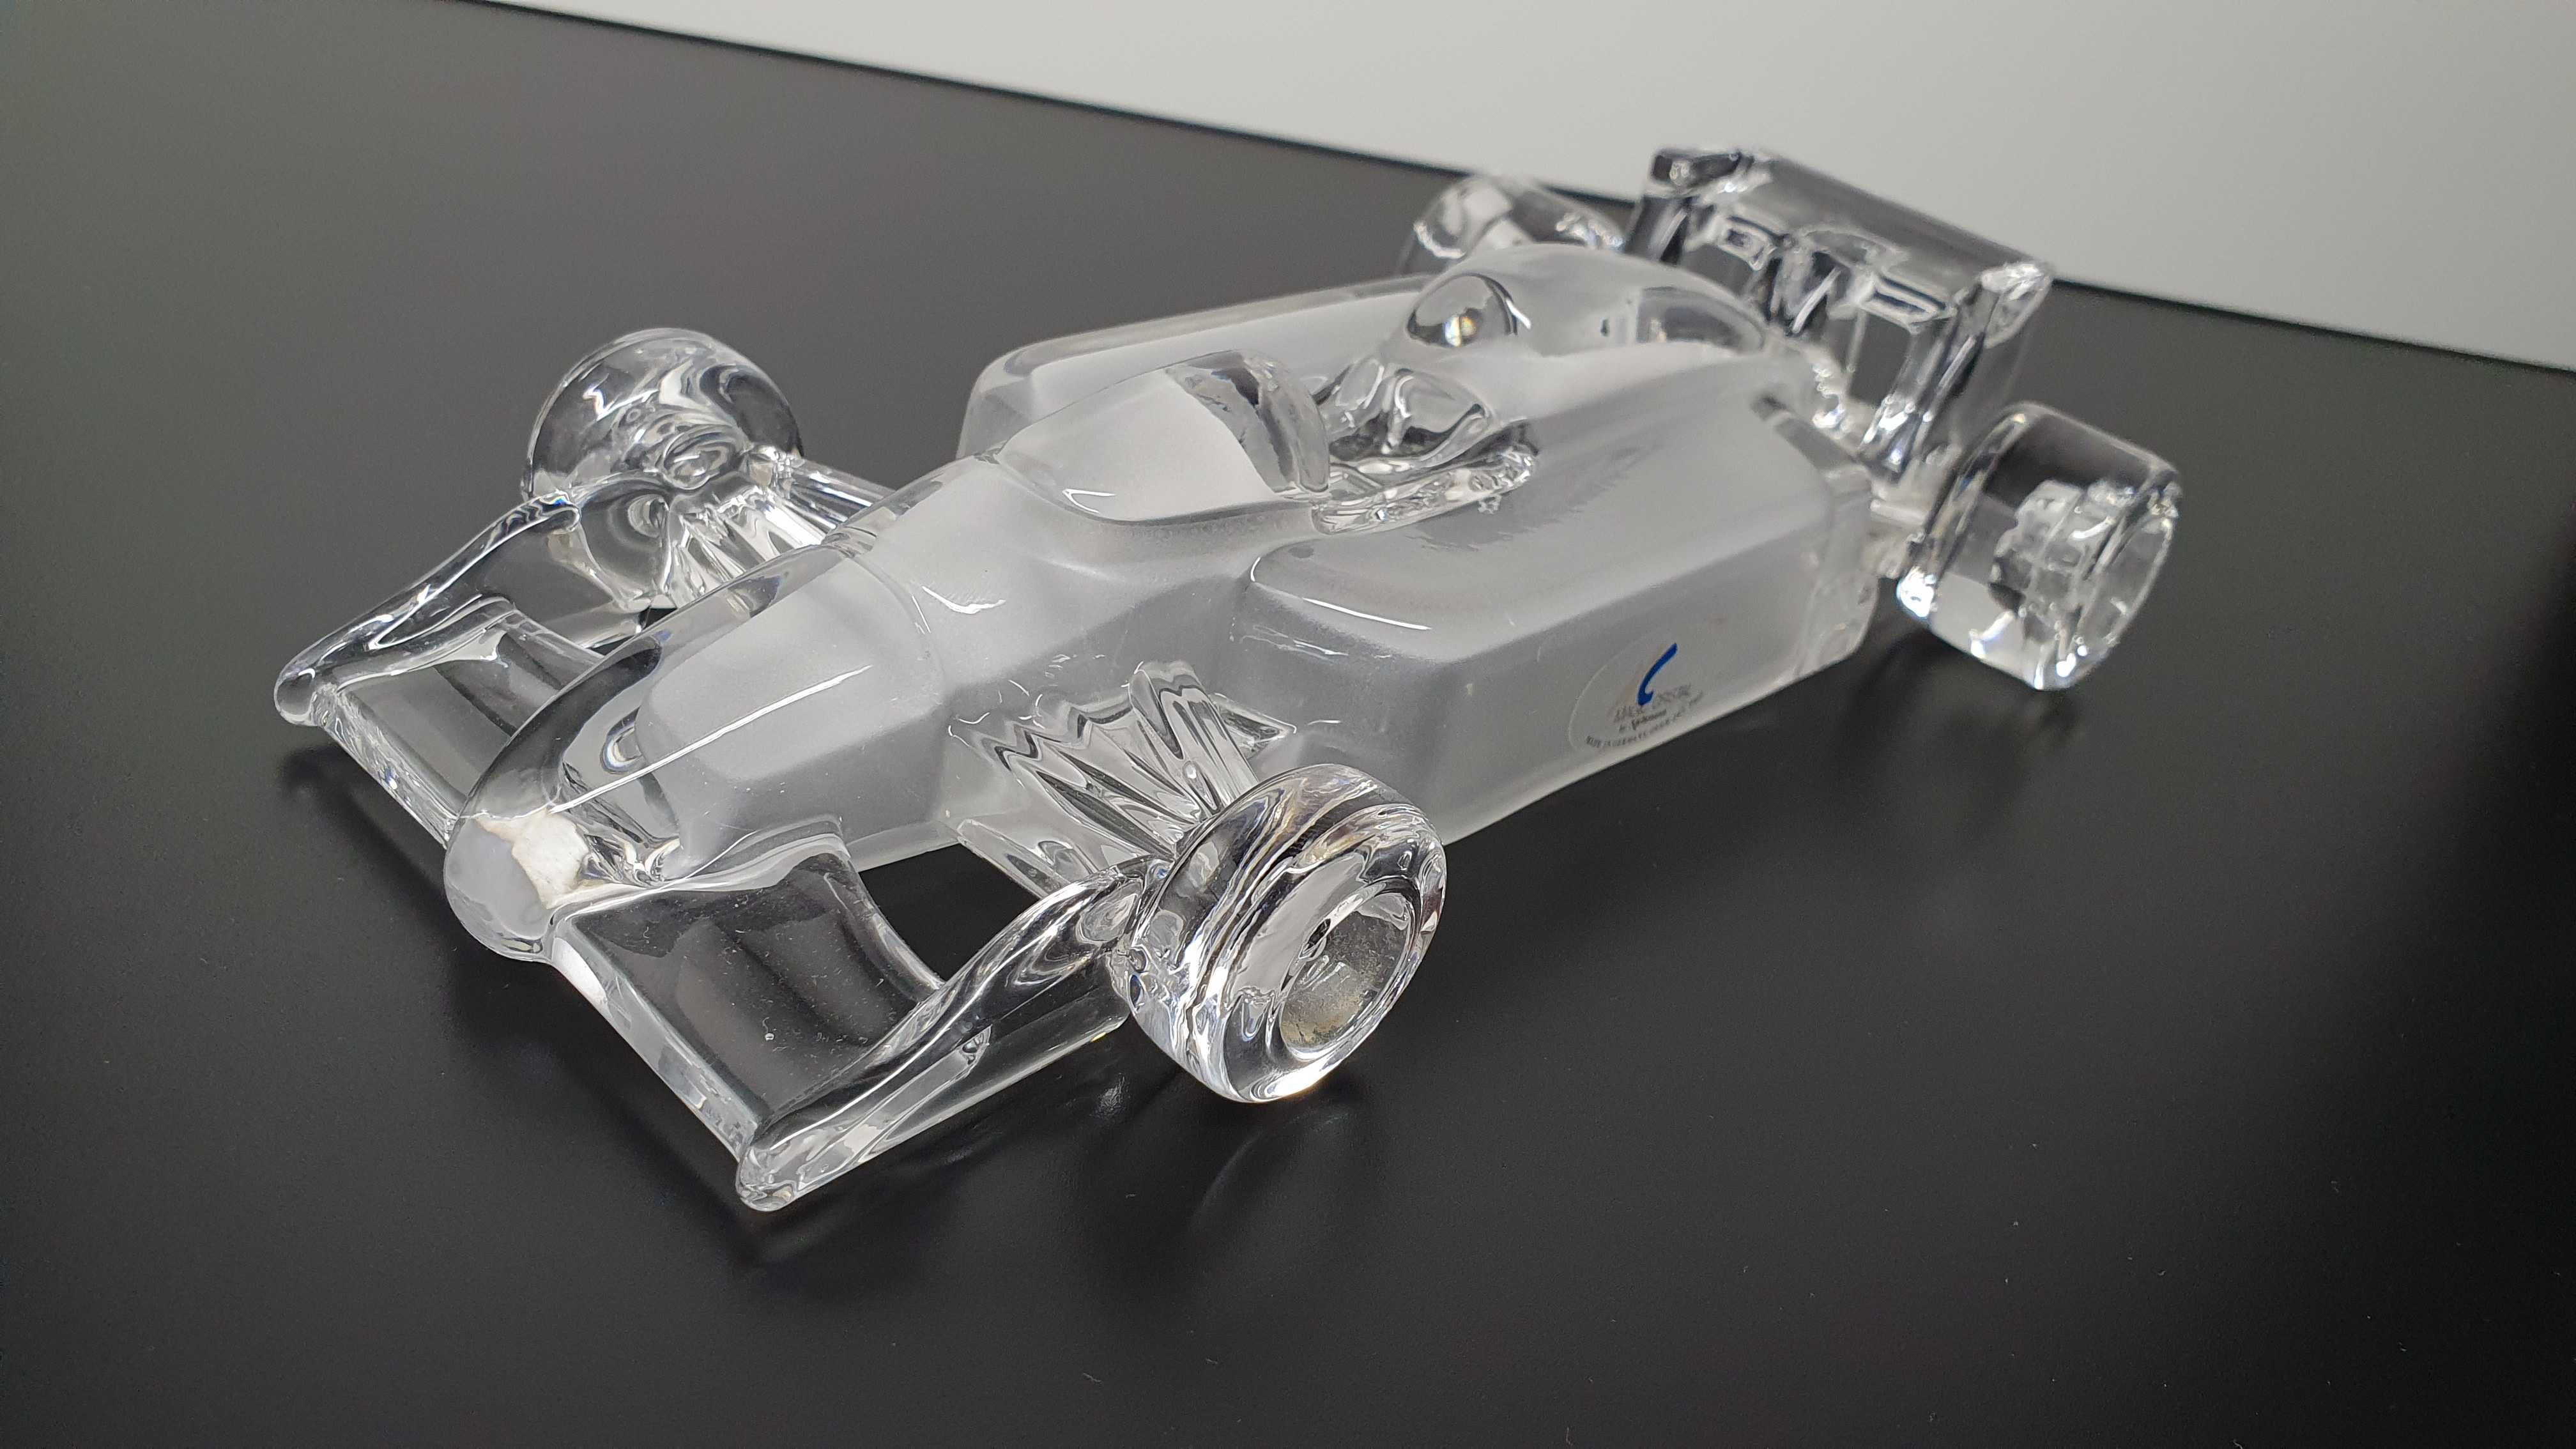 Szklana Formuła Indy 500 | Szkło ołowiowe (kryształowe) 24%